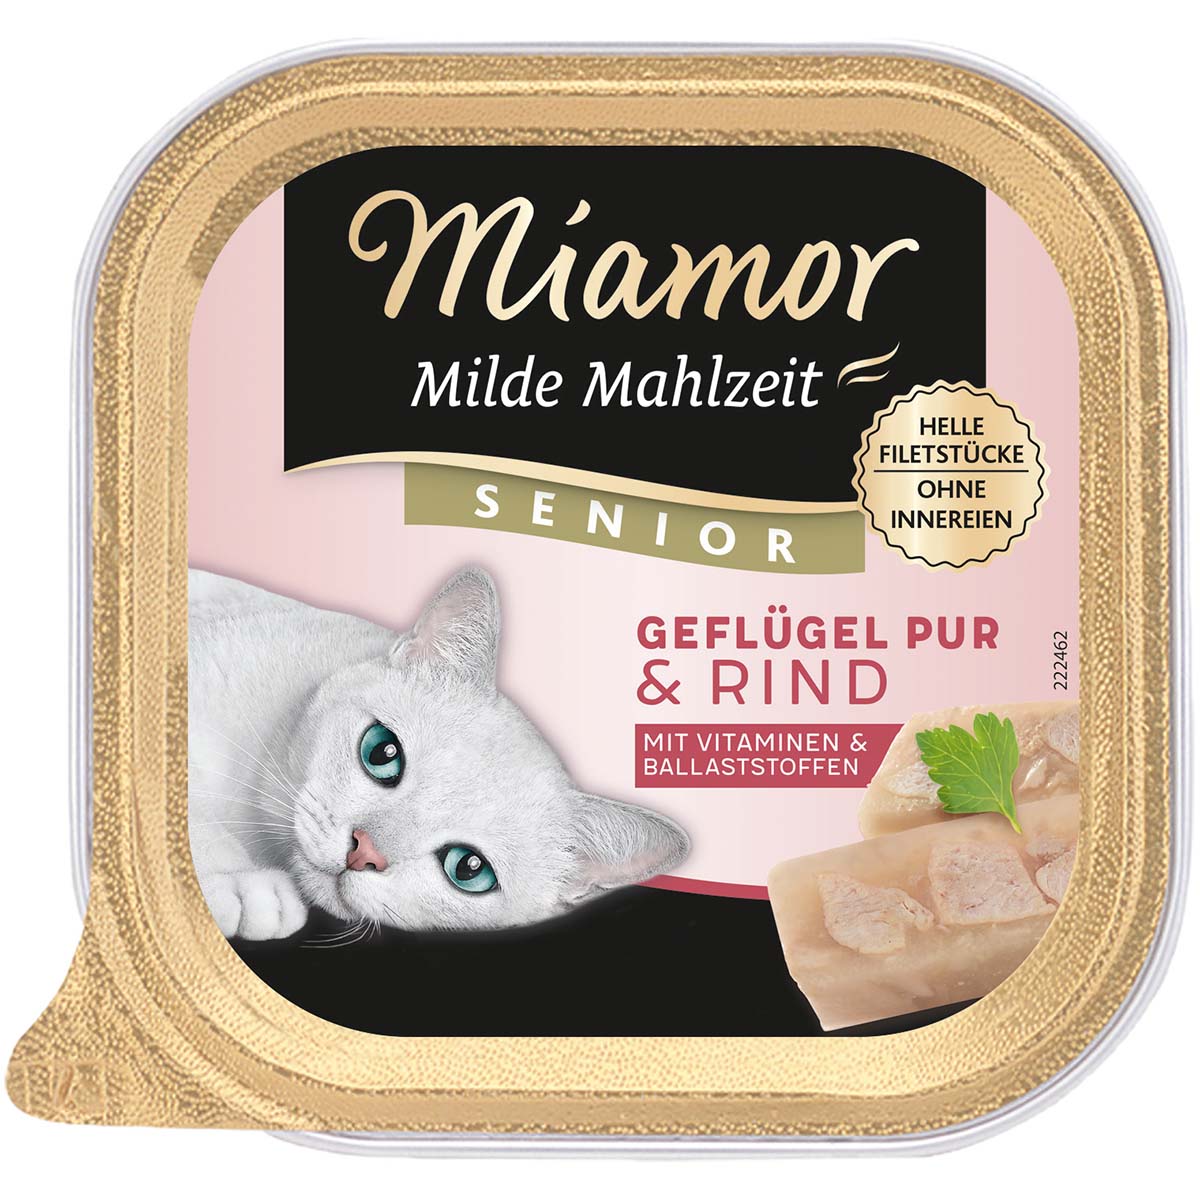 Miamor Milde Mahlzeit Senior Geflügel Pur & Rind 32x100g von Miamor